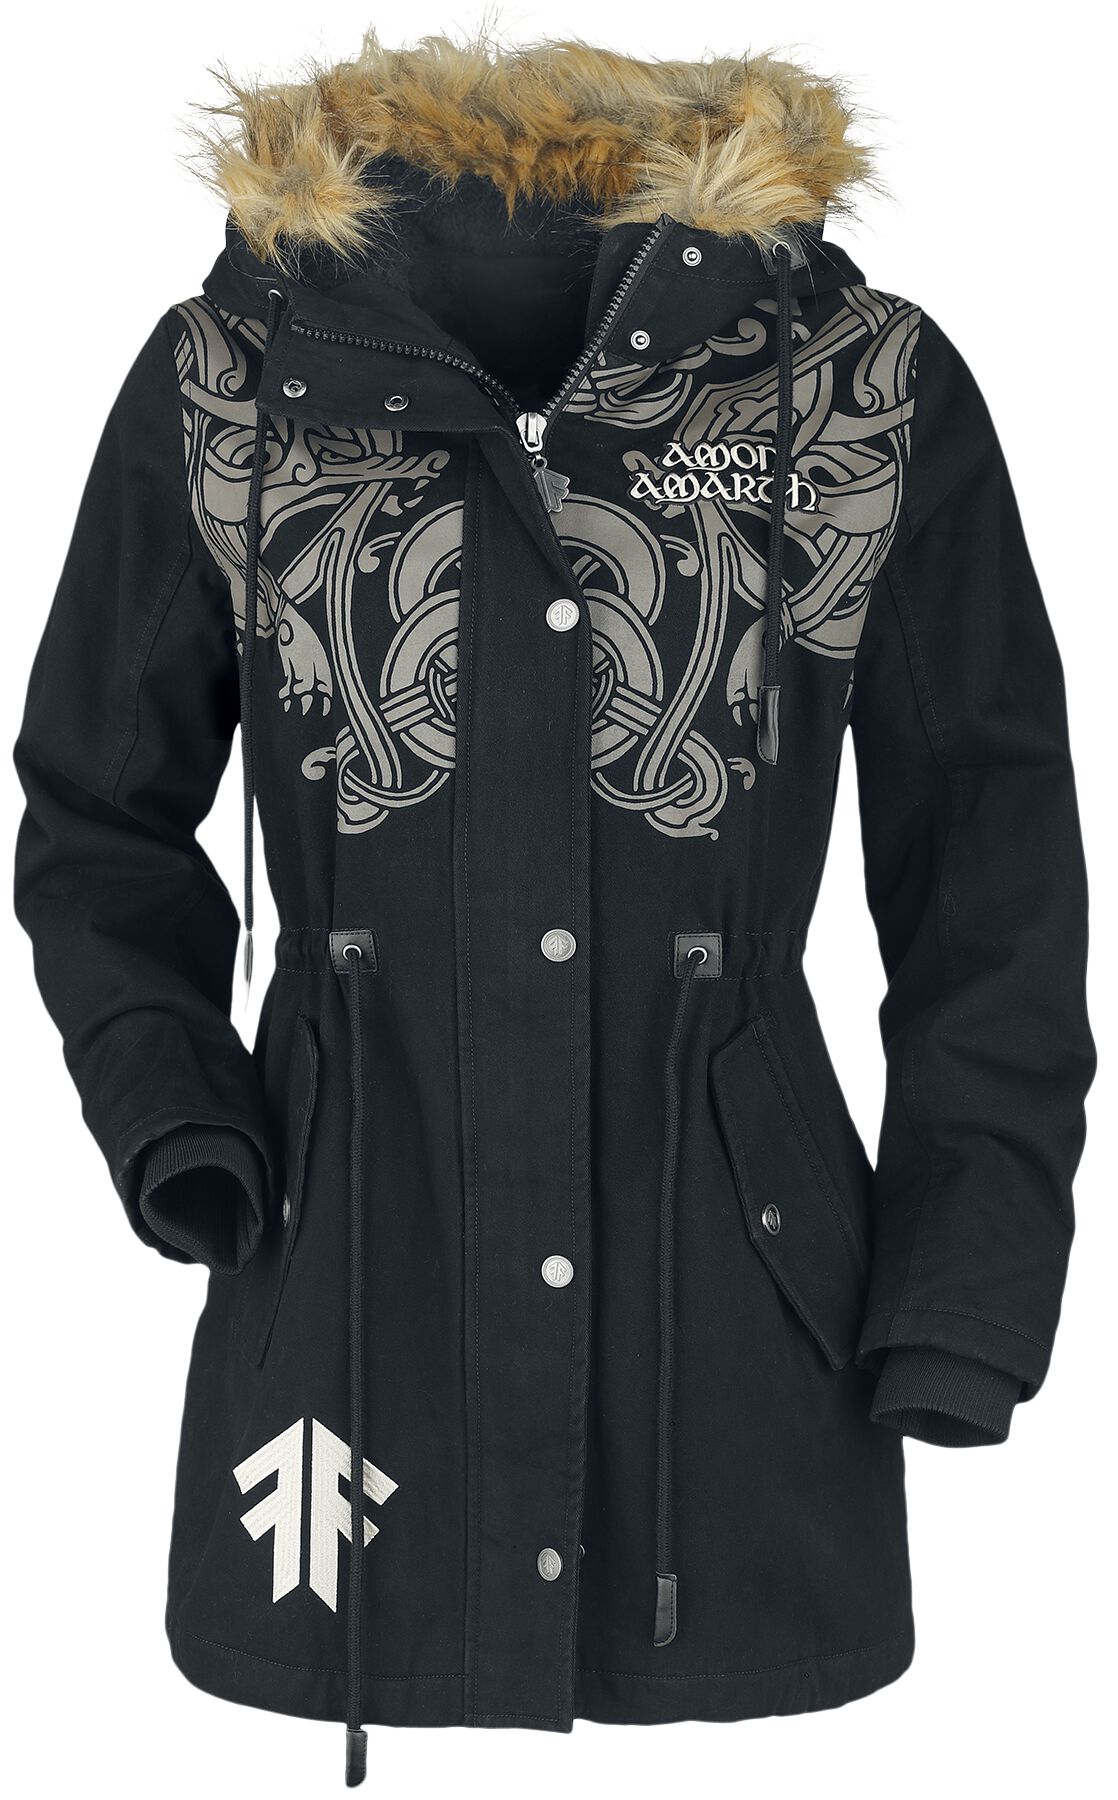 Amon Amarth Winterjacke - EMP Signature Collection - S bis XL - für Damen - Größe S - schwarz  - EMP exklusives Merchandise!